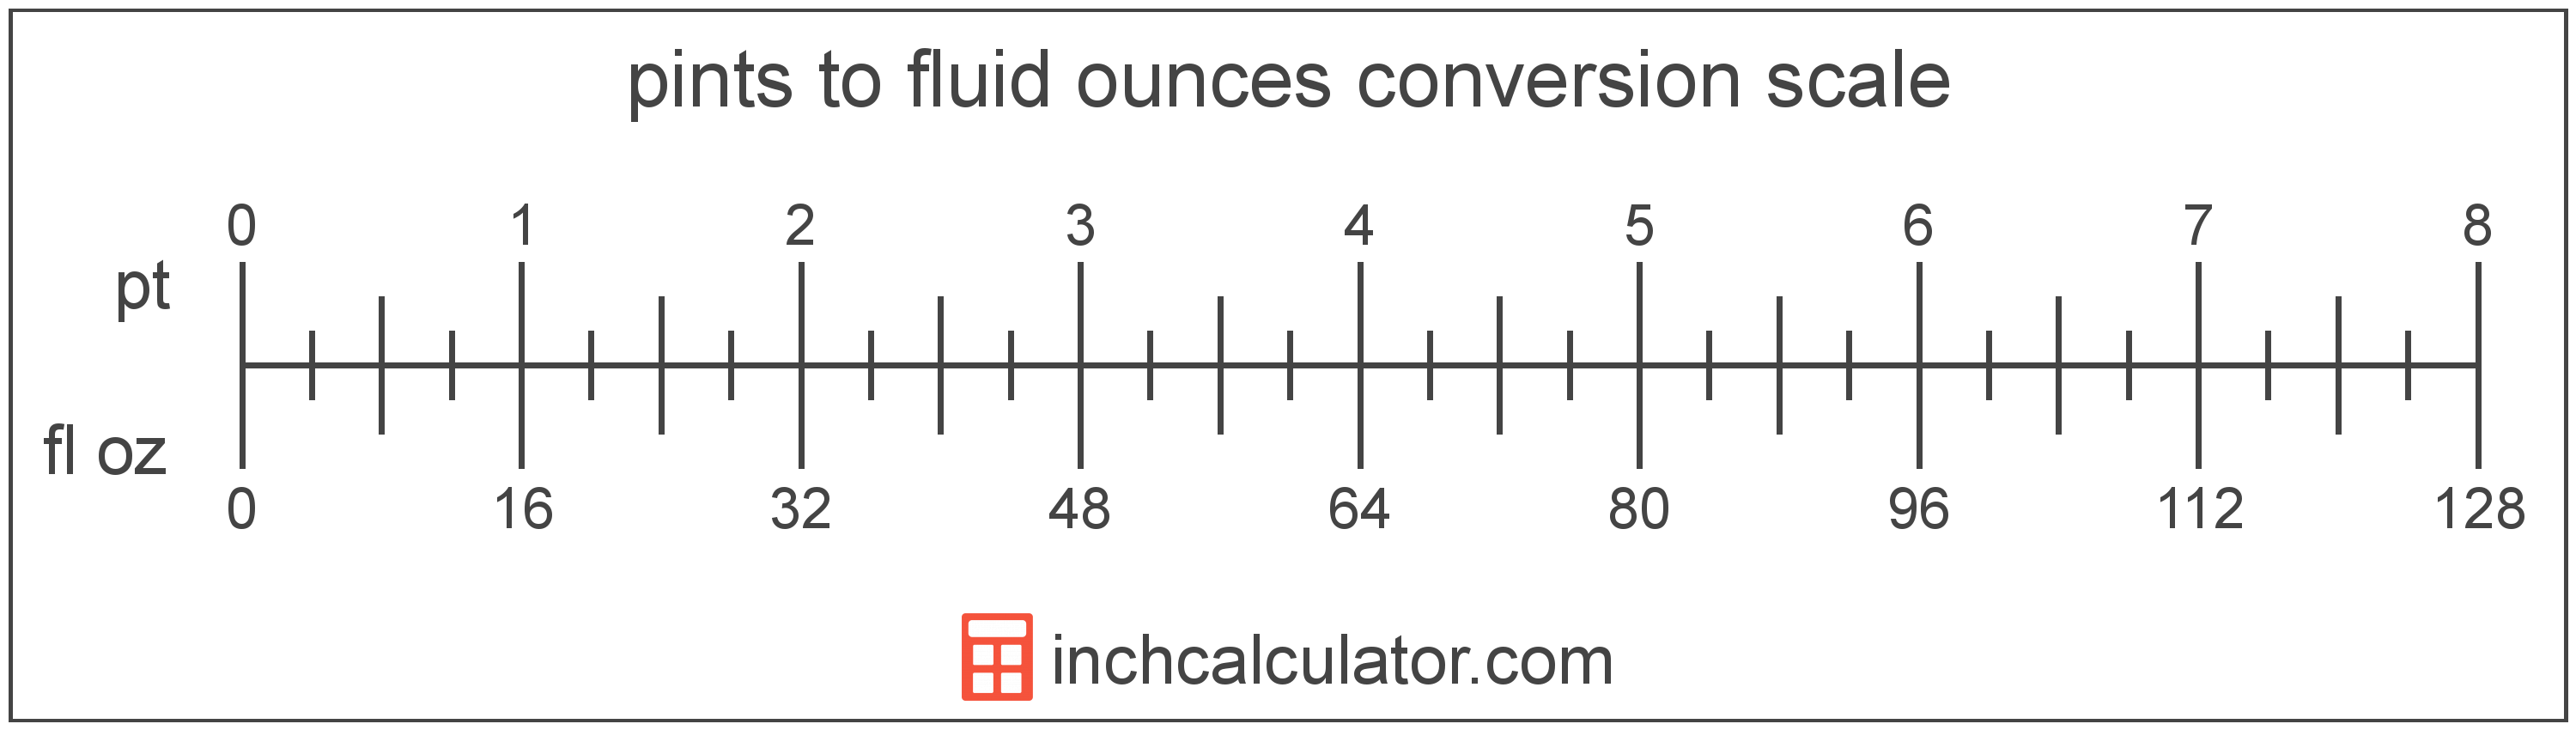 Convert Fluid Ounces to Pints - (fl oz to pt)